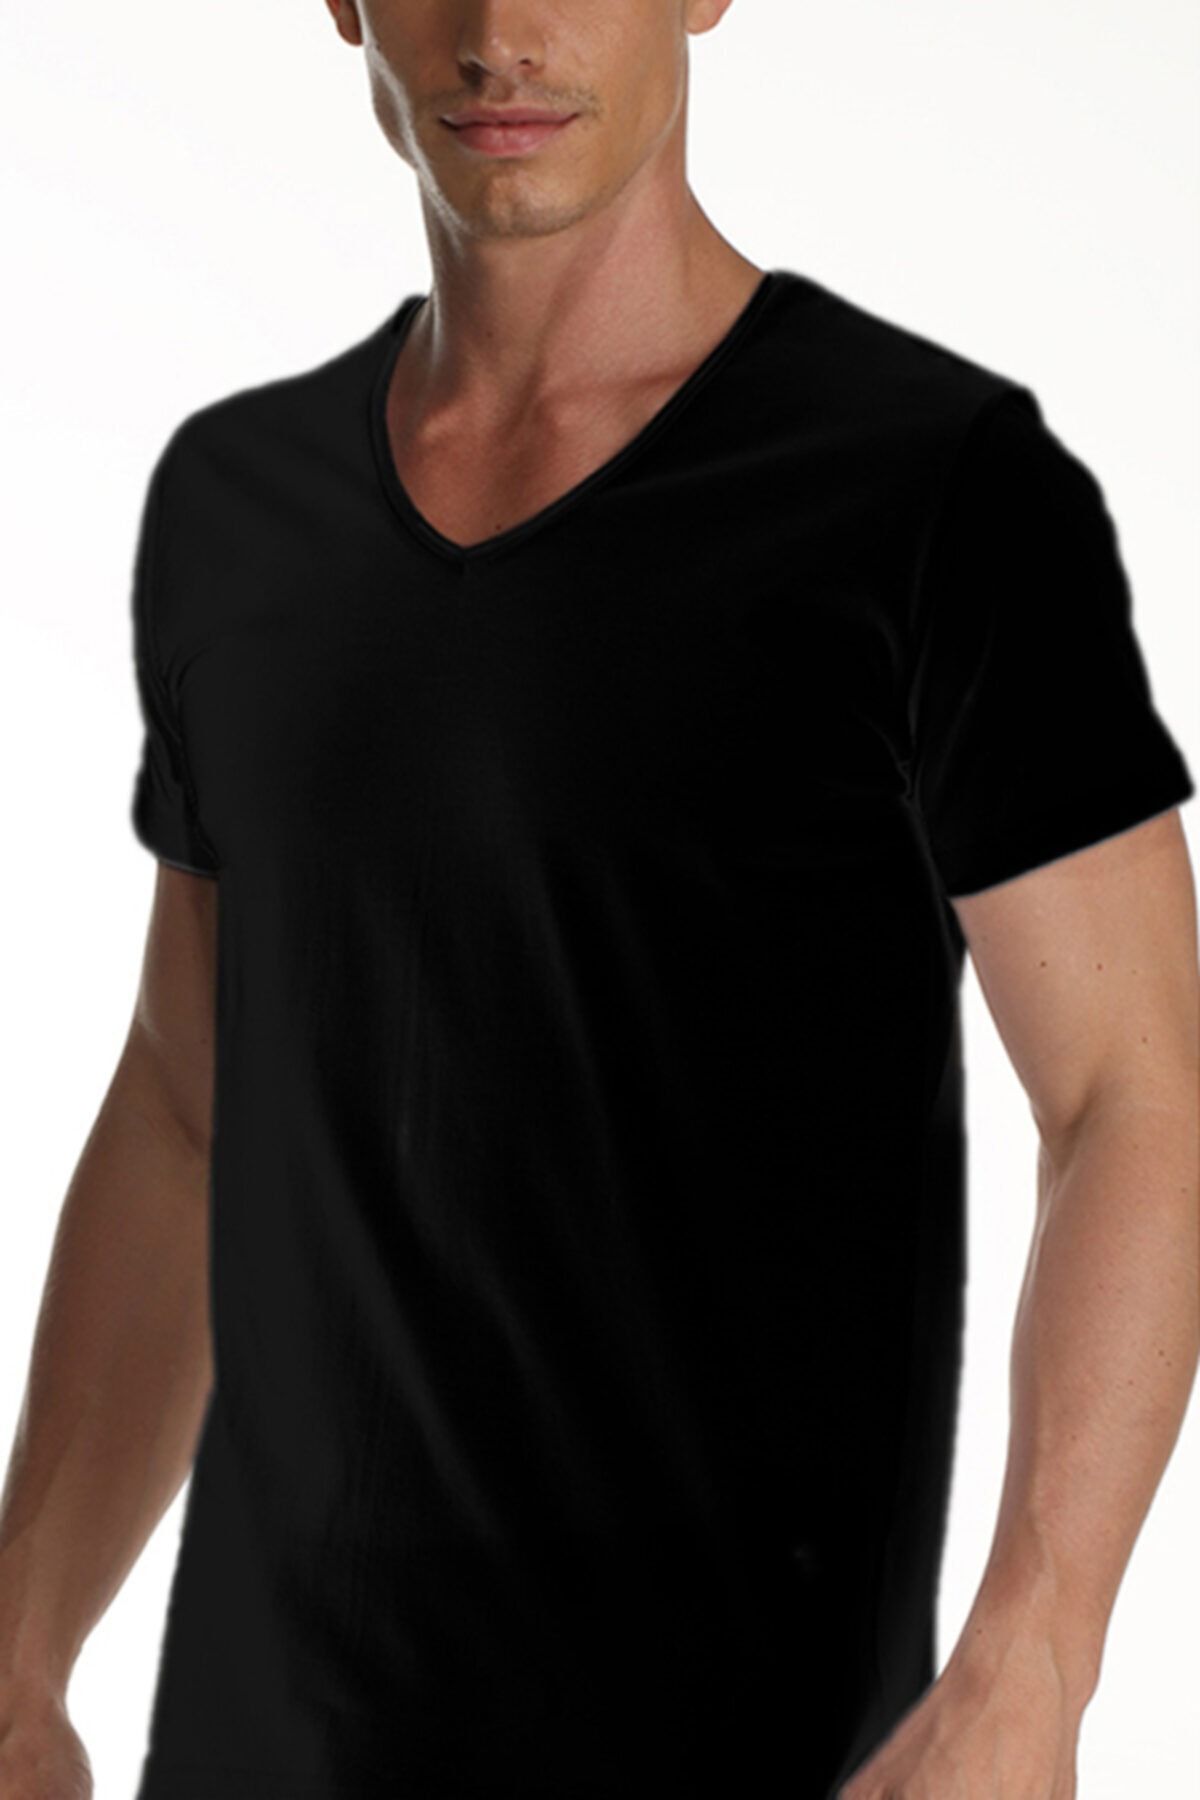 Çift Kaplan Erkek Süprem V Yaka Siyah T-shirt 0952